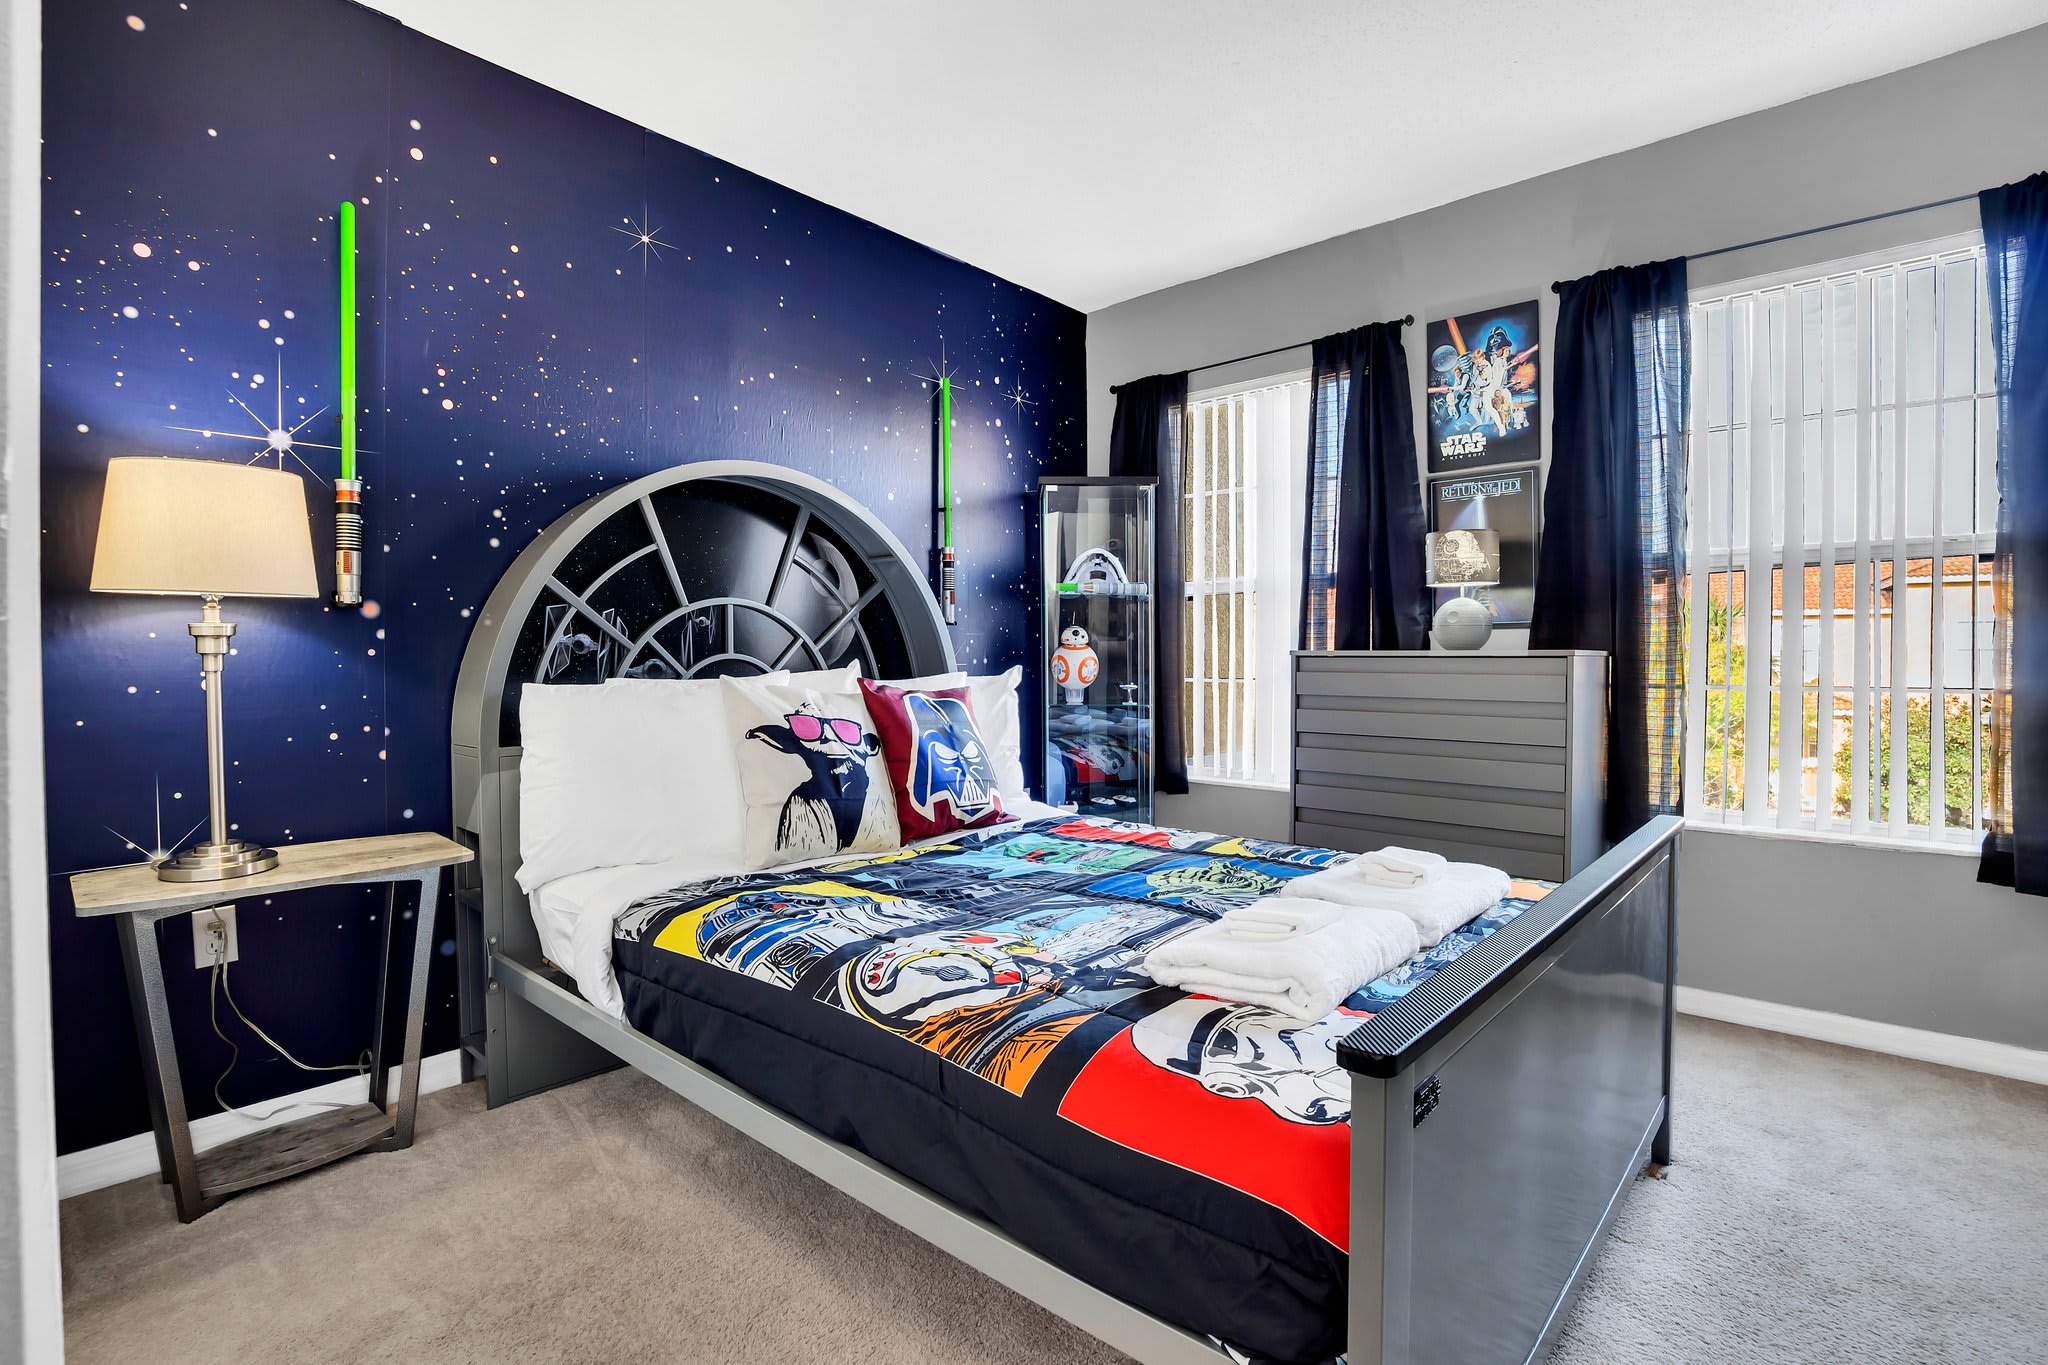 Star Wars Themed Bedroom near Disney World